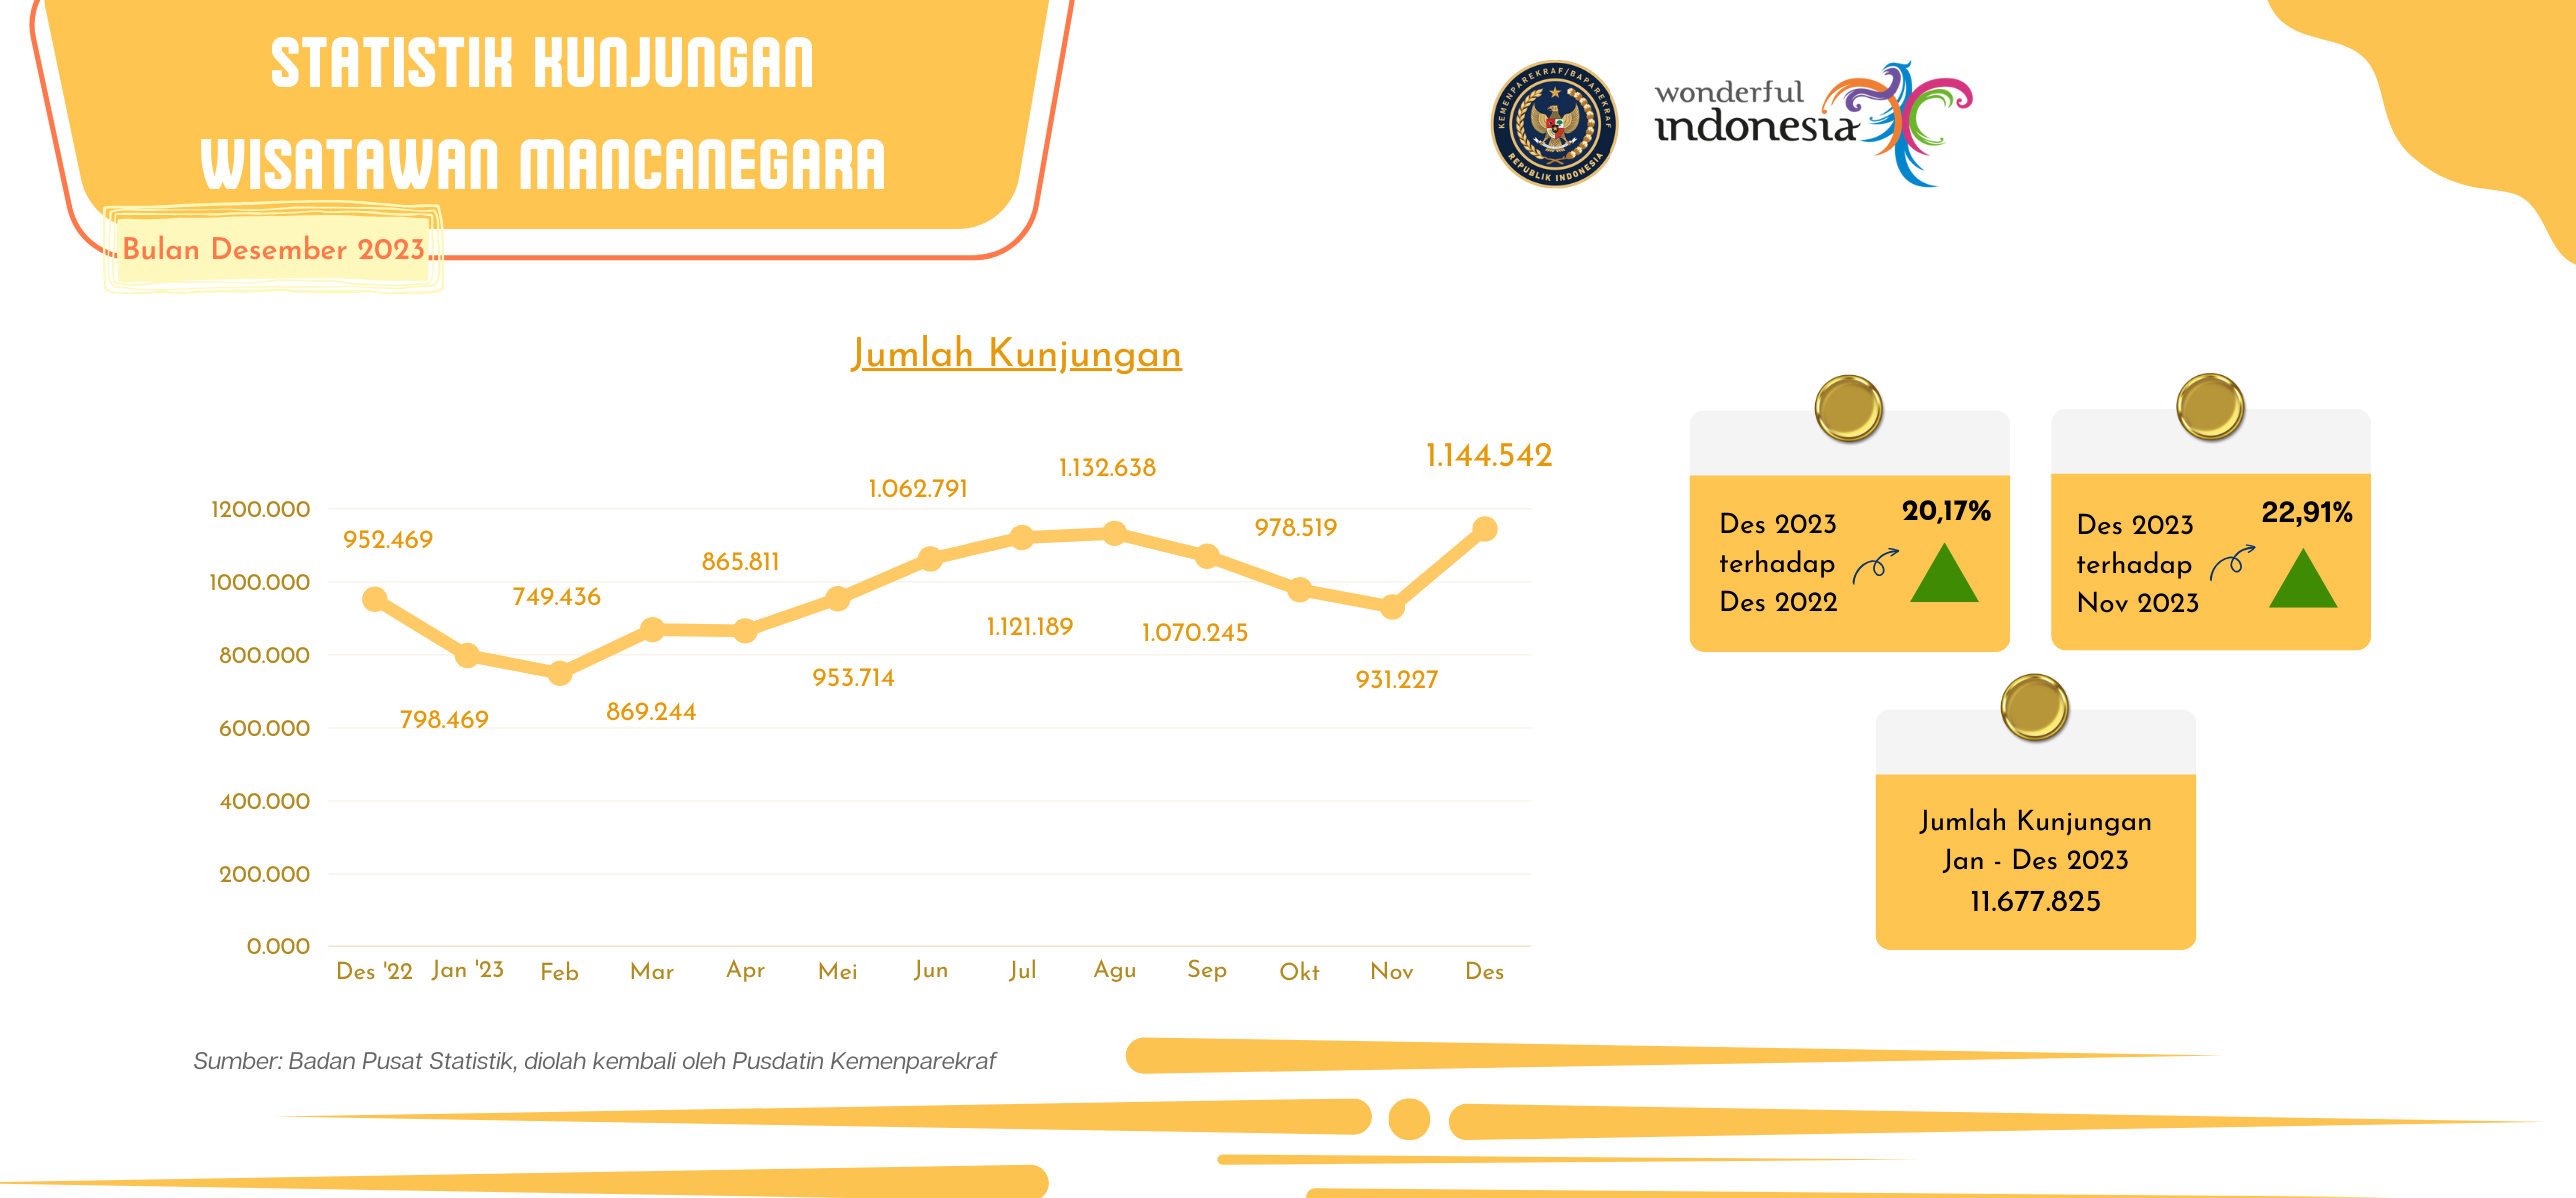 Statistik Kunjungan Wisatawan Mancanegara Bulan Desember 2023